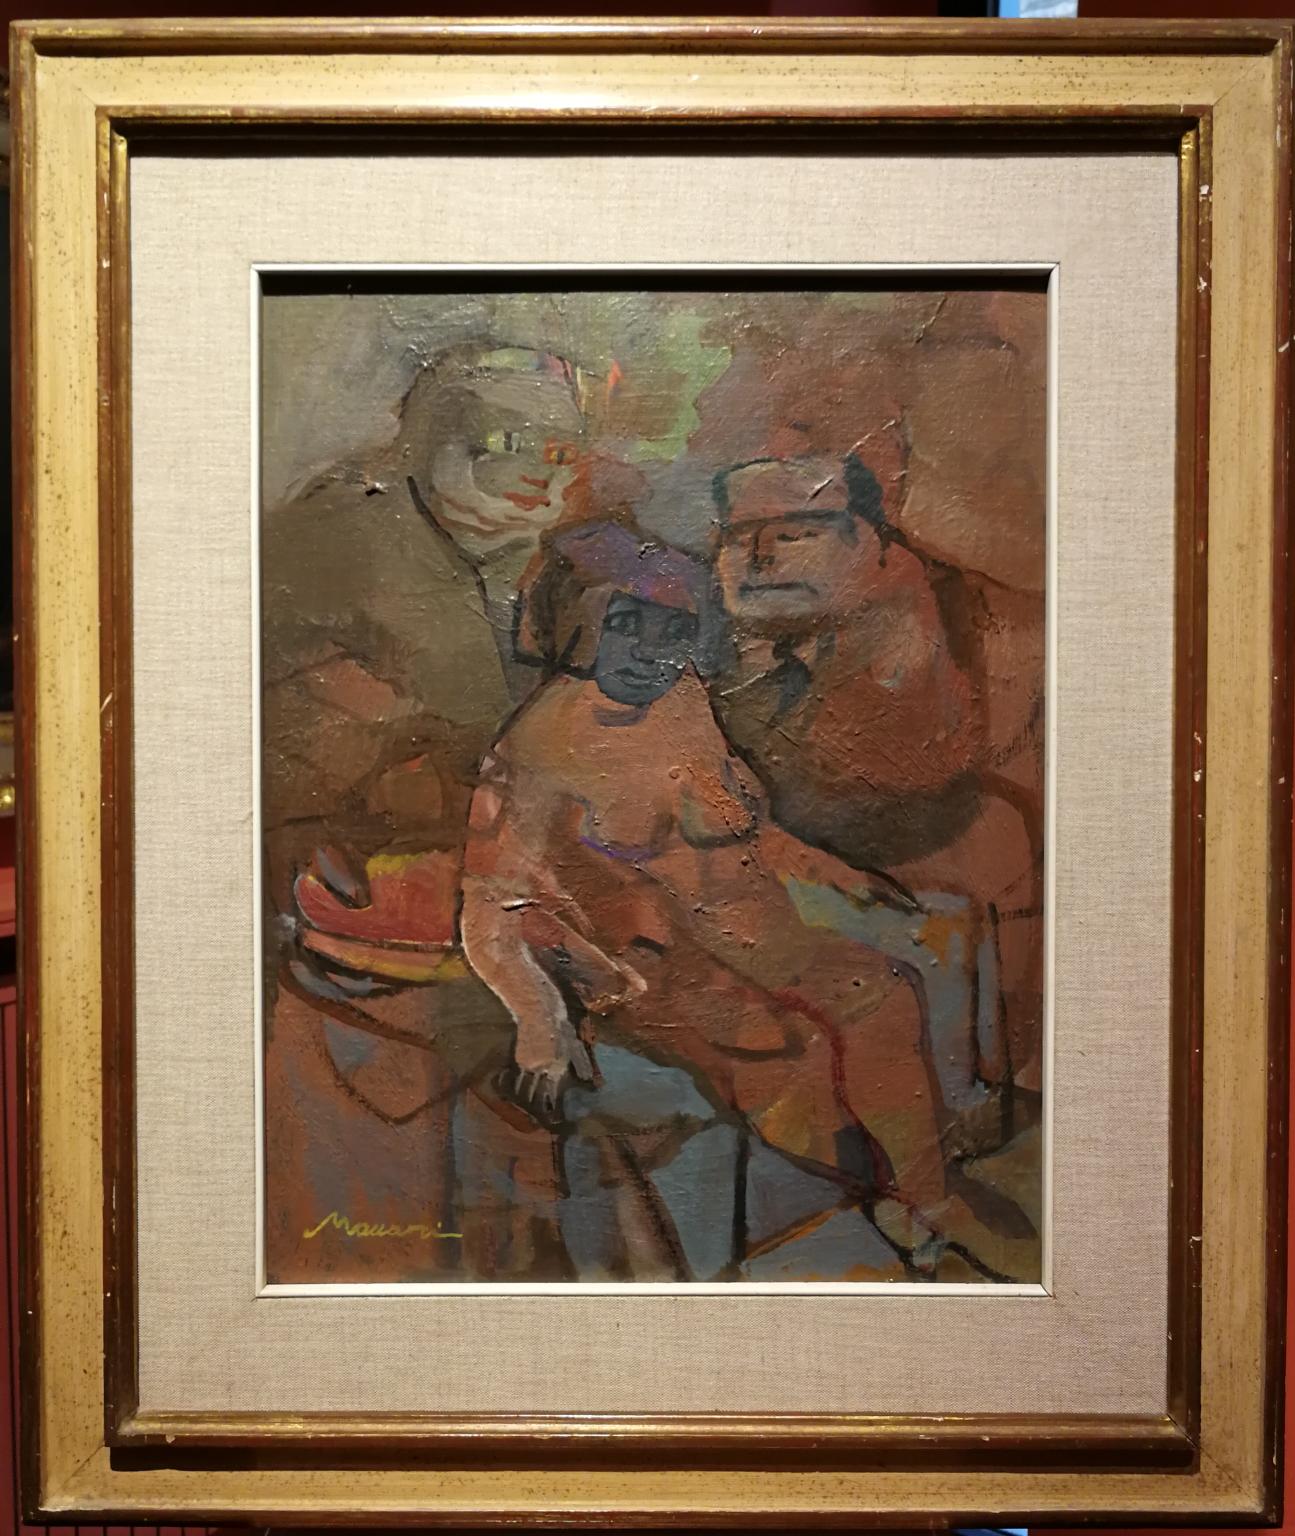 Postimpressionistisches figuratives Gemälde in Öl auf Leinwand, signiert von M. Maccari, 1956 (Post-Impressionismus), Painting, von  Mino Maccari